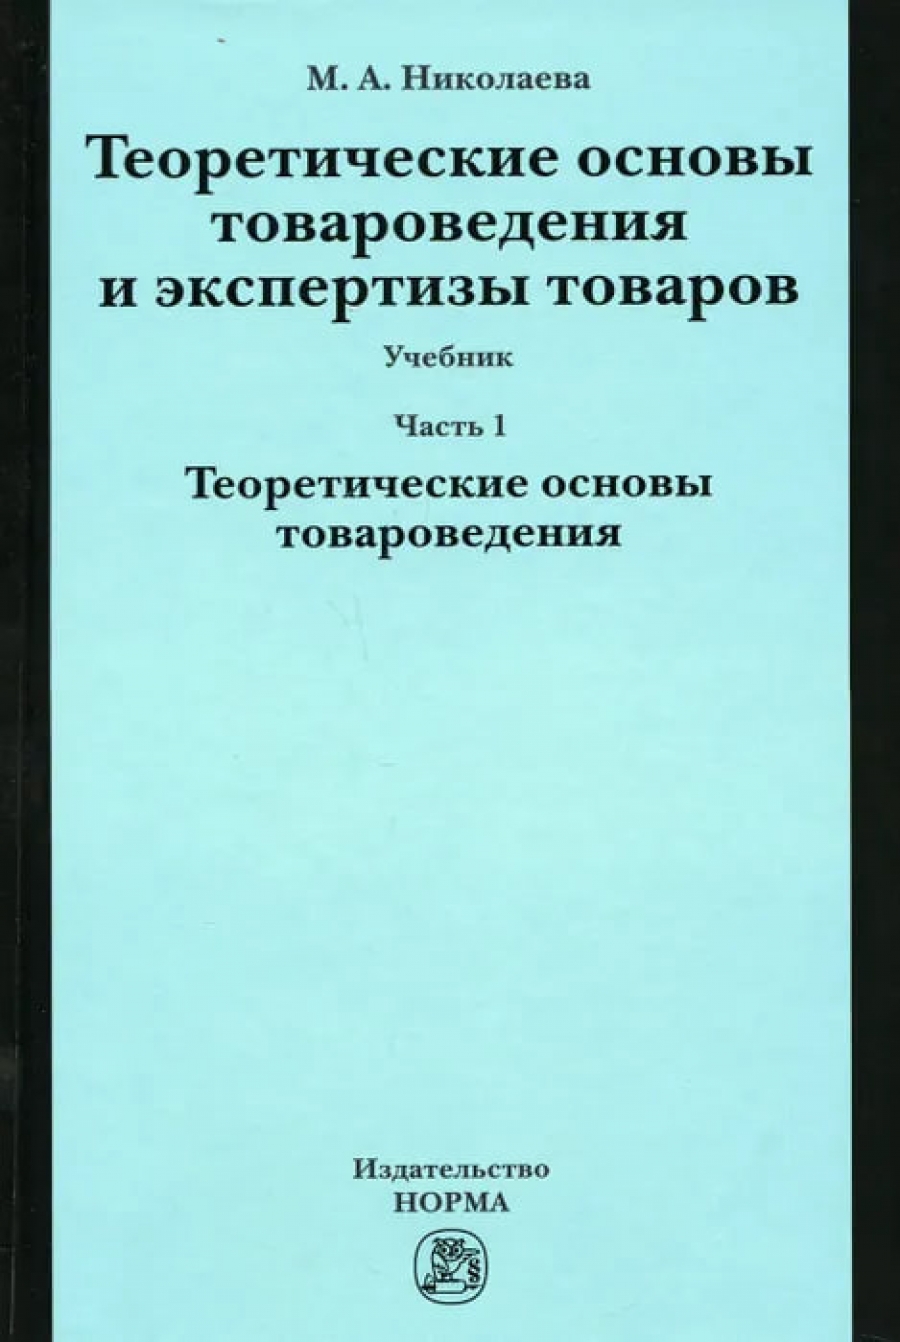 Николаева М.А. Теоретические основы товароведения и экспертизы товаров 